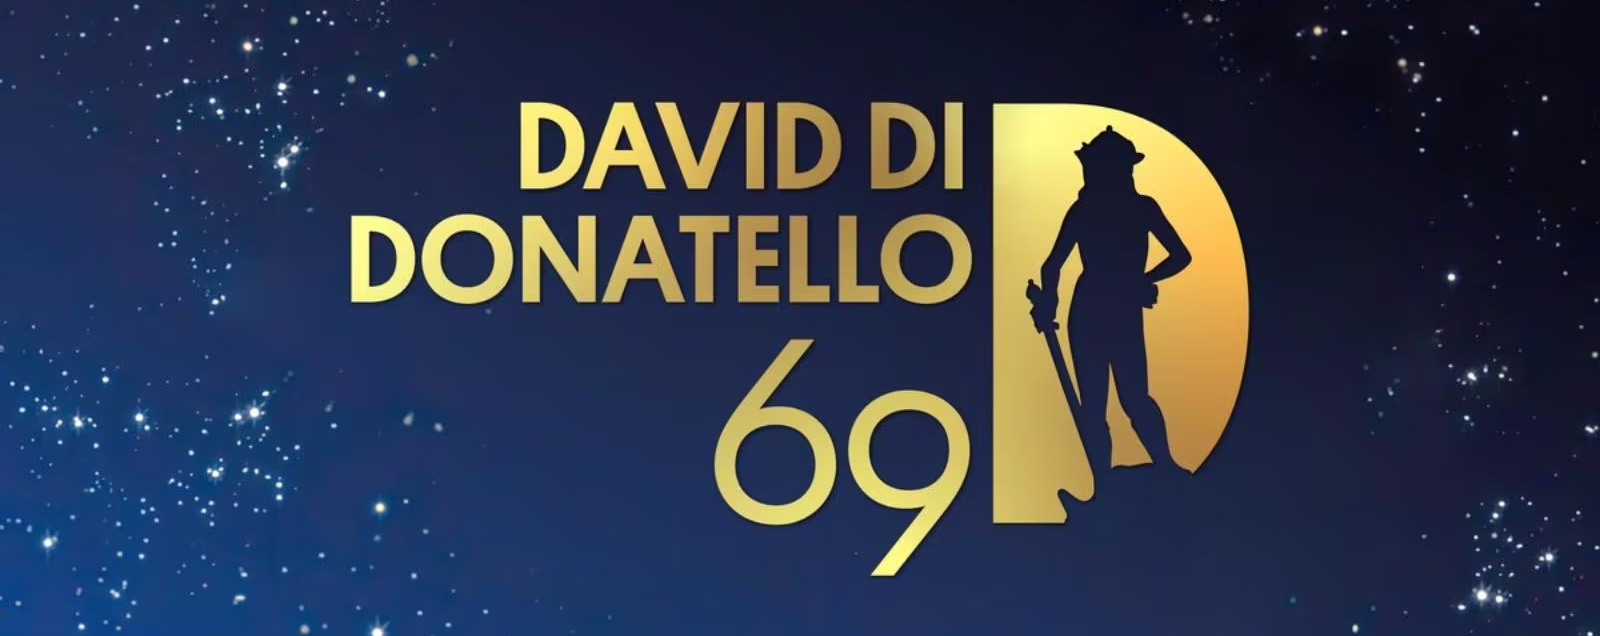 David di Donatello 2024: domani, venerdì 3 maggio, la premiazione in diretta su Rai 1 alle ore 20:35